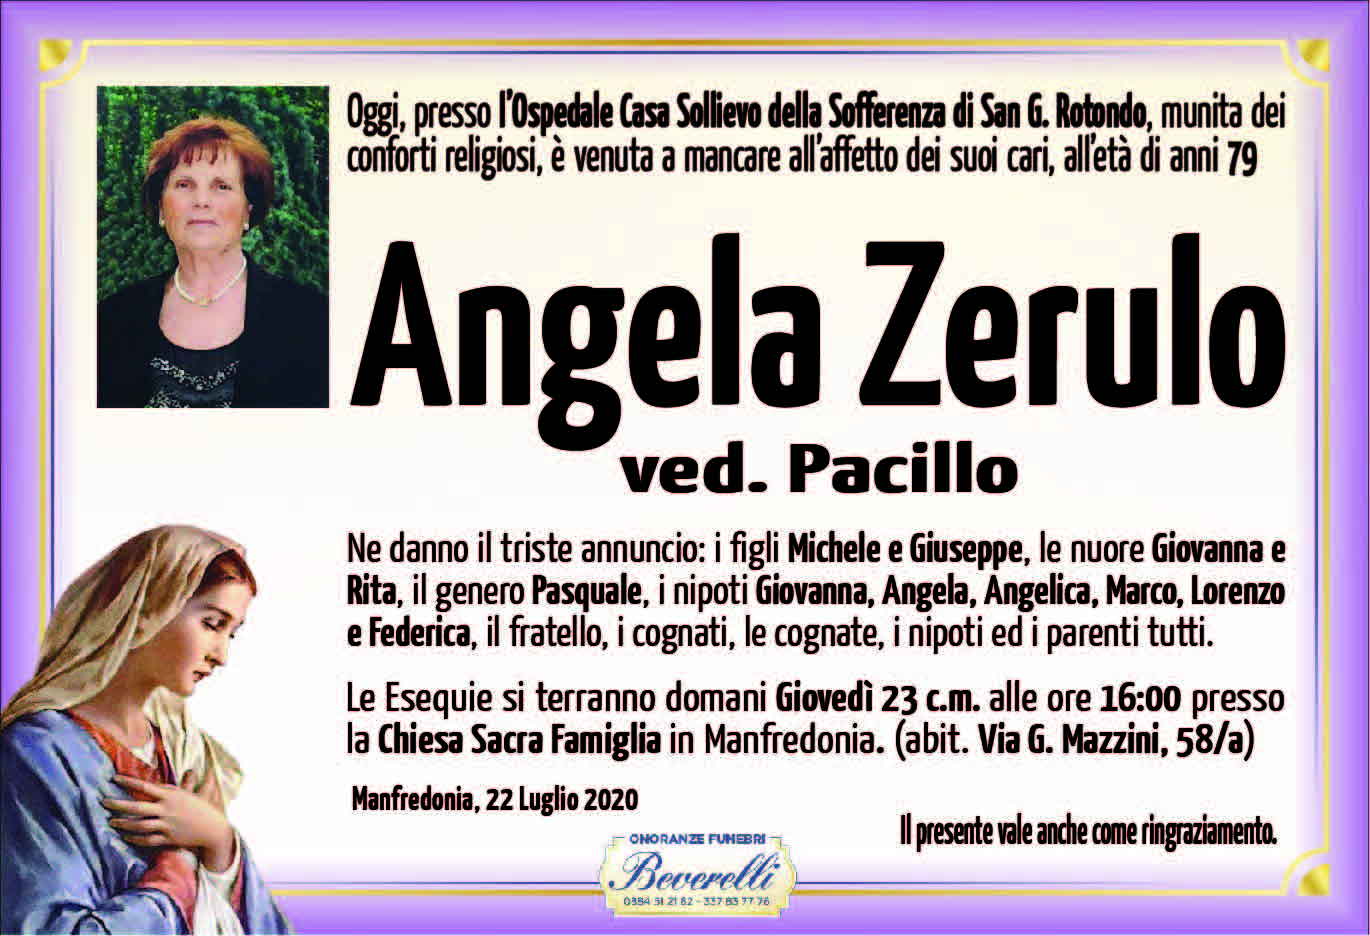 Angela Zerulo